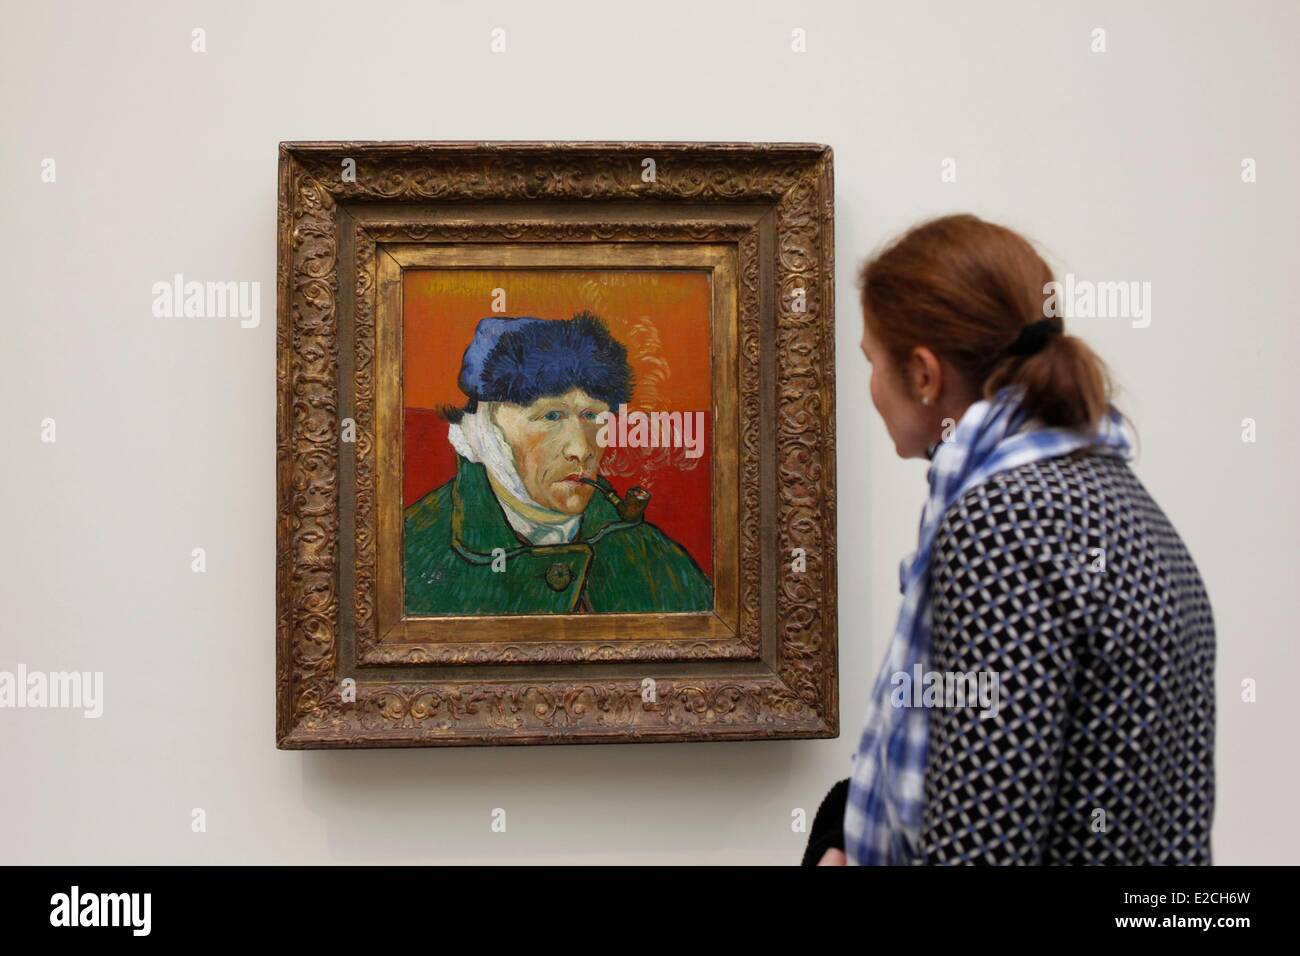 Schweiz, Zürich, Kunsthaus (Museum of Modern Art), die Arbeit von Van Gogh,  der Mann Ohr ab, Selbstporträt Stockfotografie - Alamy